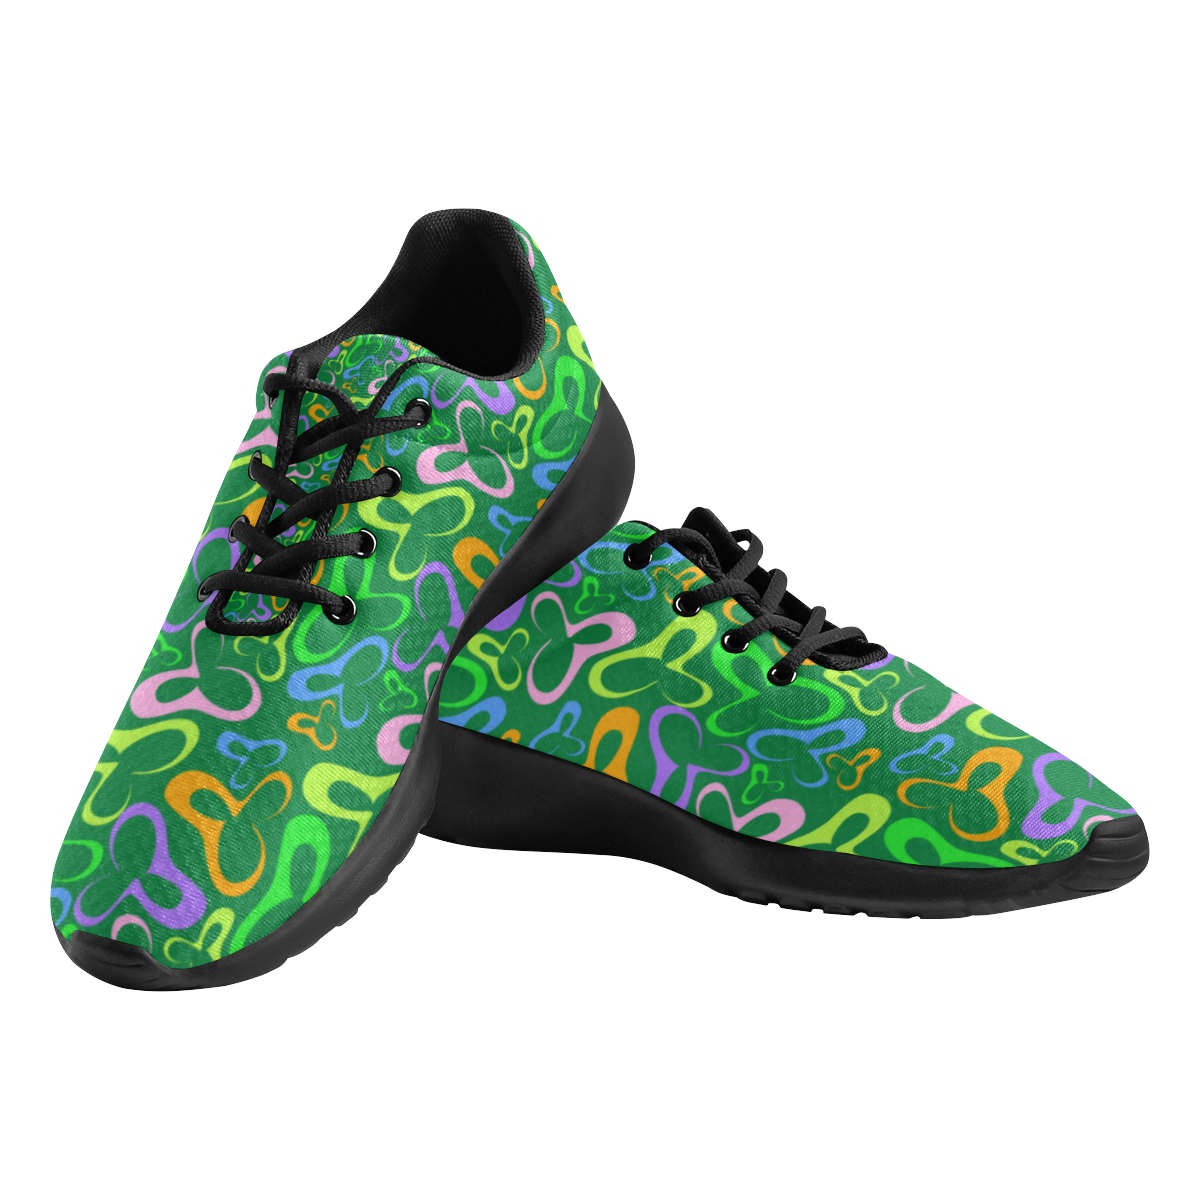 deportivas de hombre verde sicodelico Men's Athletic Shoes (Model 0200)